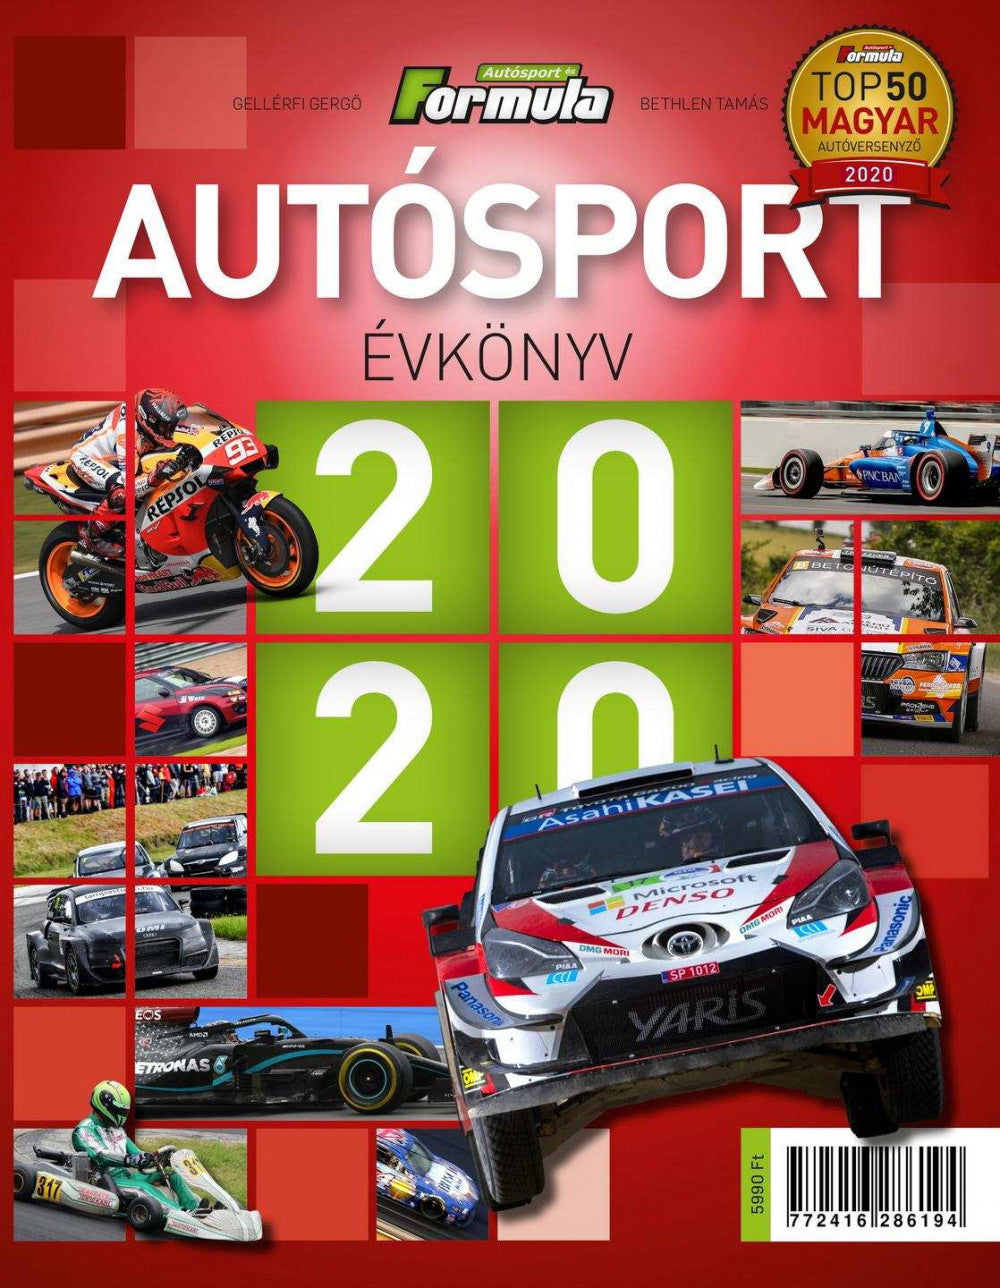 Autosport Évkönyv 2020 - kniha